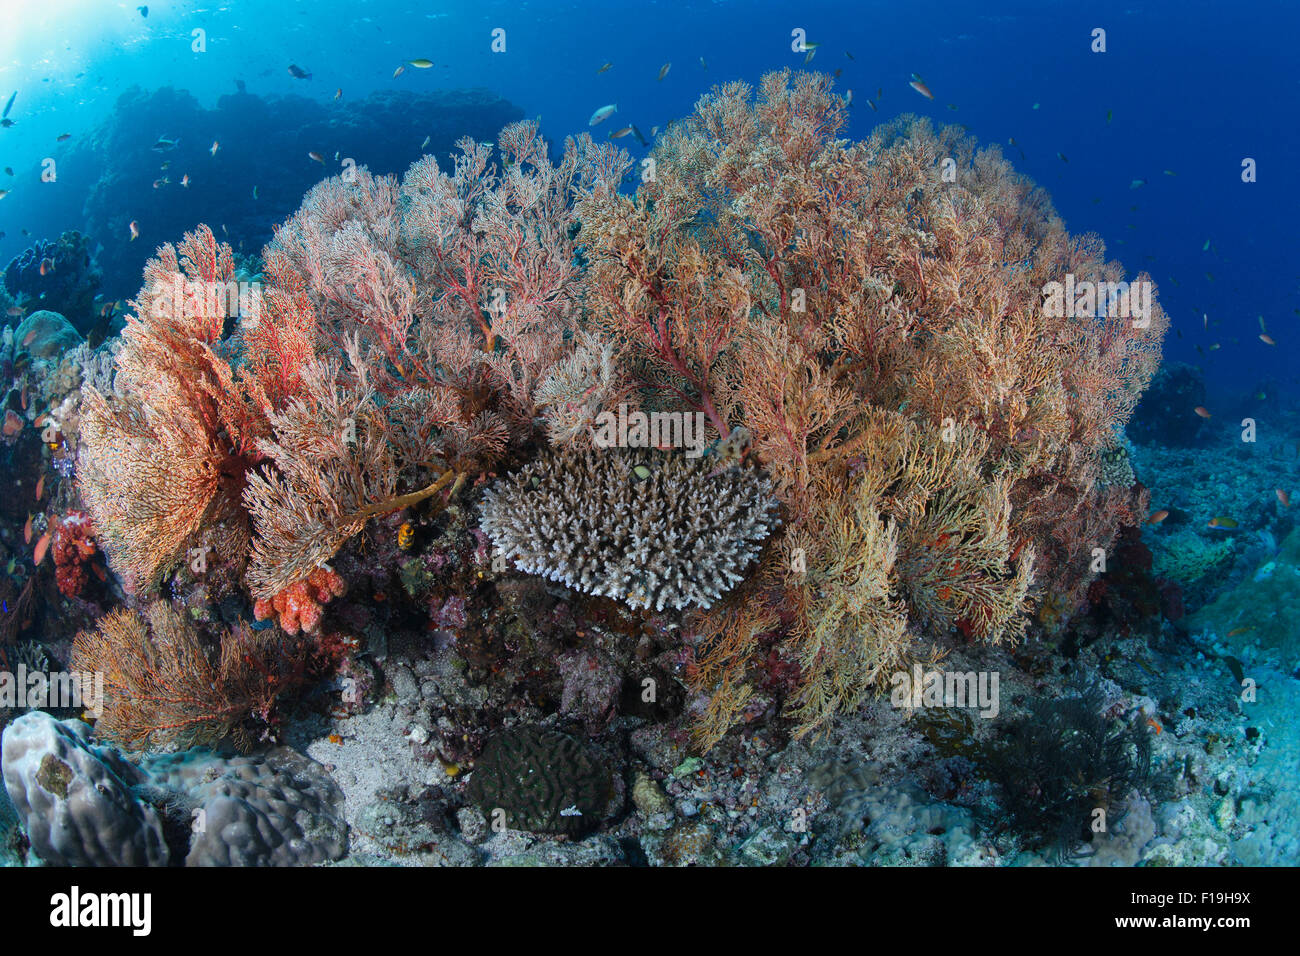 px0668-D. Gorgonien (Melithaea sp.). Indonesien, tropischen Pazifik. Foto Copyright © Brandon Cole. Alle Rechte vorbehalten weltweit Stockfoto